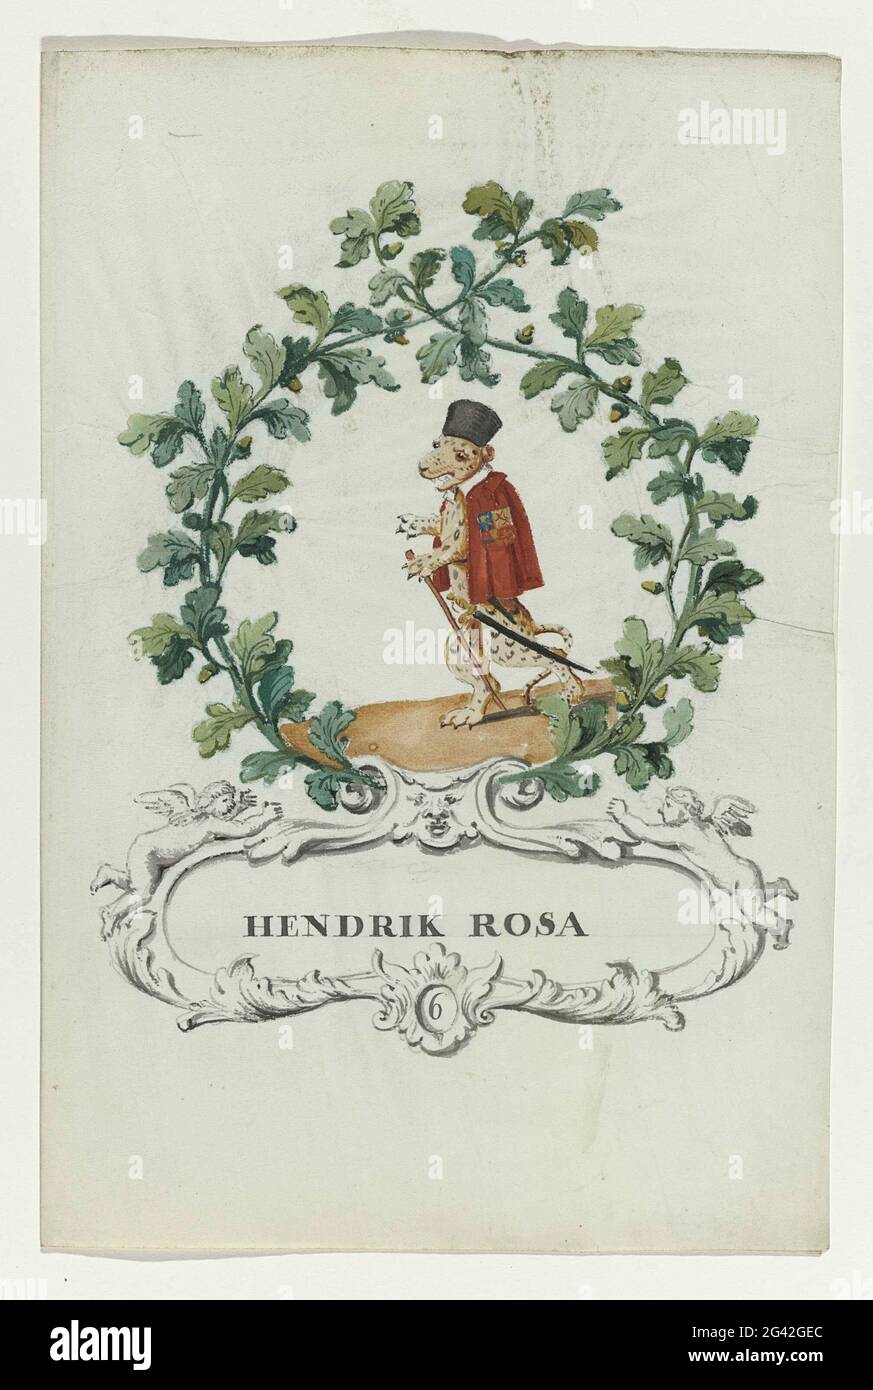 Caricatura de Henrik Rosa; Regtspleging Van Oldenbarnevelt. Caricatura de  Henrik Rosa, juez de Van Oldenbarnevelt; tigre de topos con capó y  mantaleta con arma en corona de hojas y patos de Eike.